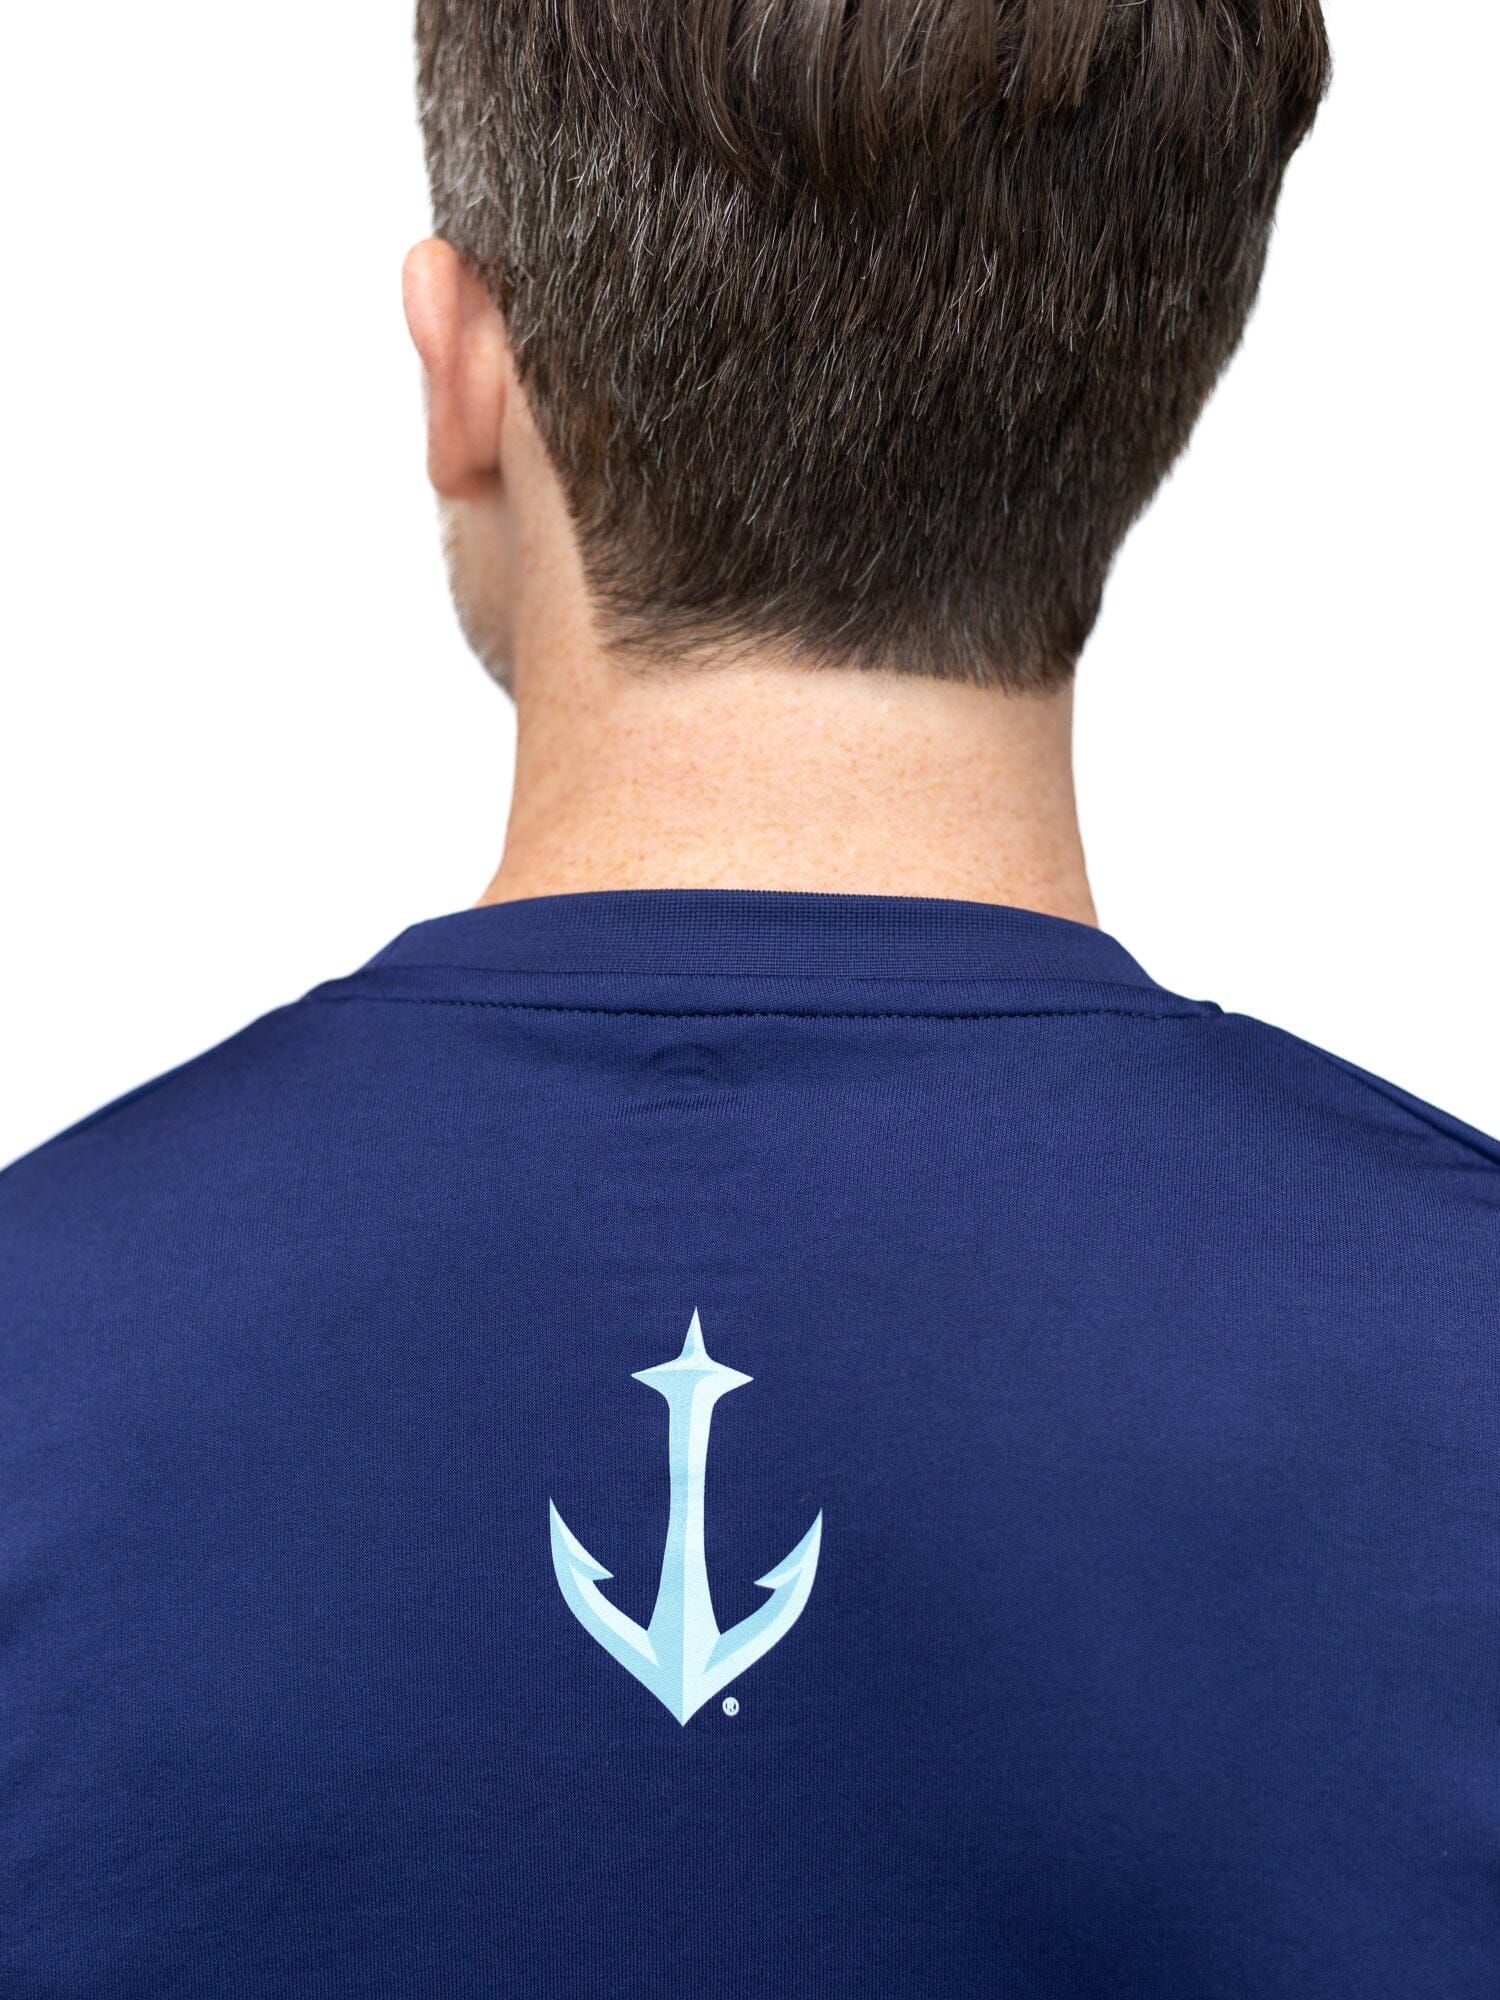 Seattle Kraken Full Fandom Moisture Wicking T-Shirt – Bench Clearers